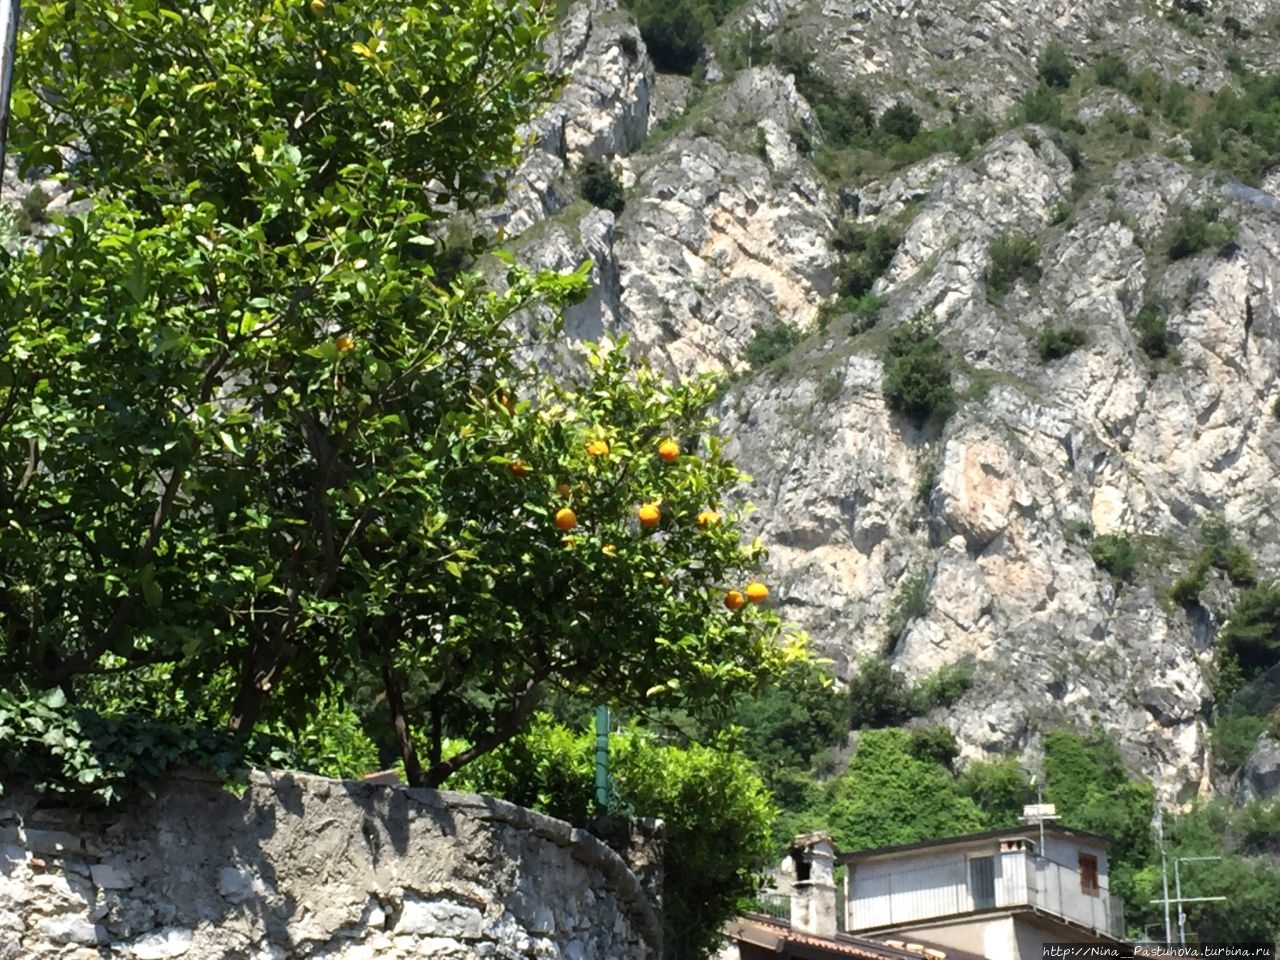 Три в одном: Лимоне, лимоны и лимончелло Лимоне-сул-Гарда, Италия